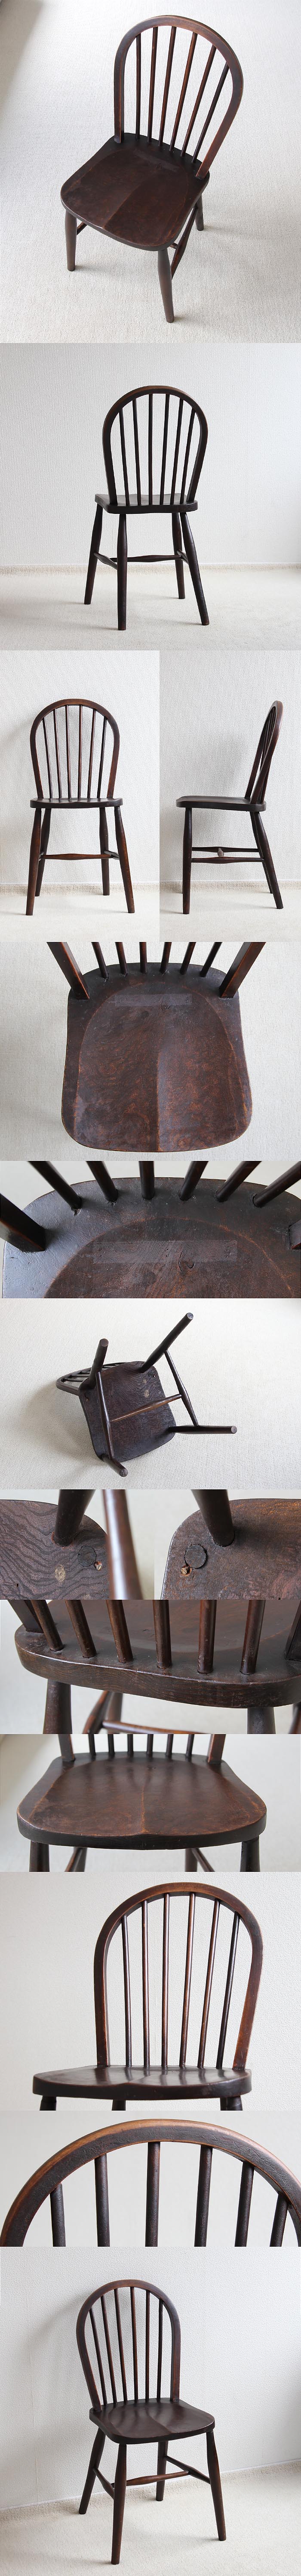 イギリス アンティーク キッチンチェア 英国 木製椅子 家具「フープバックチェア」V-544